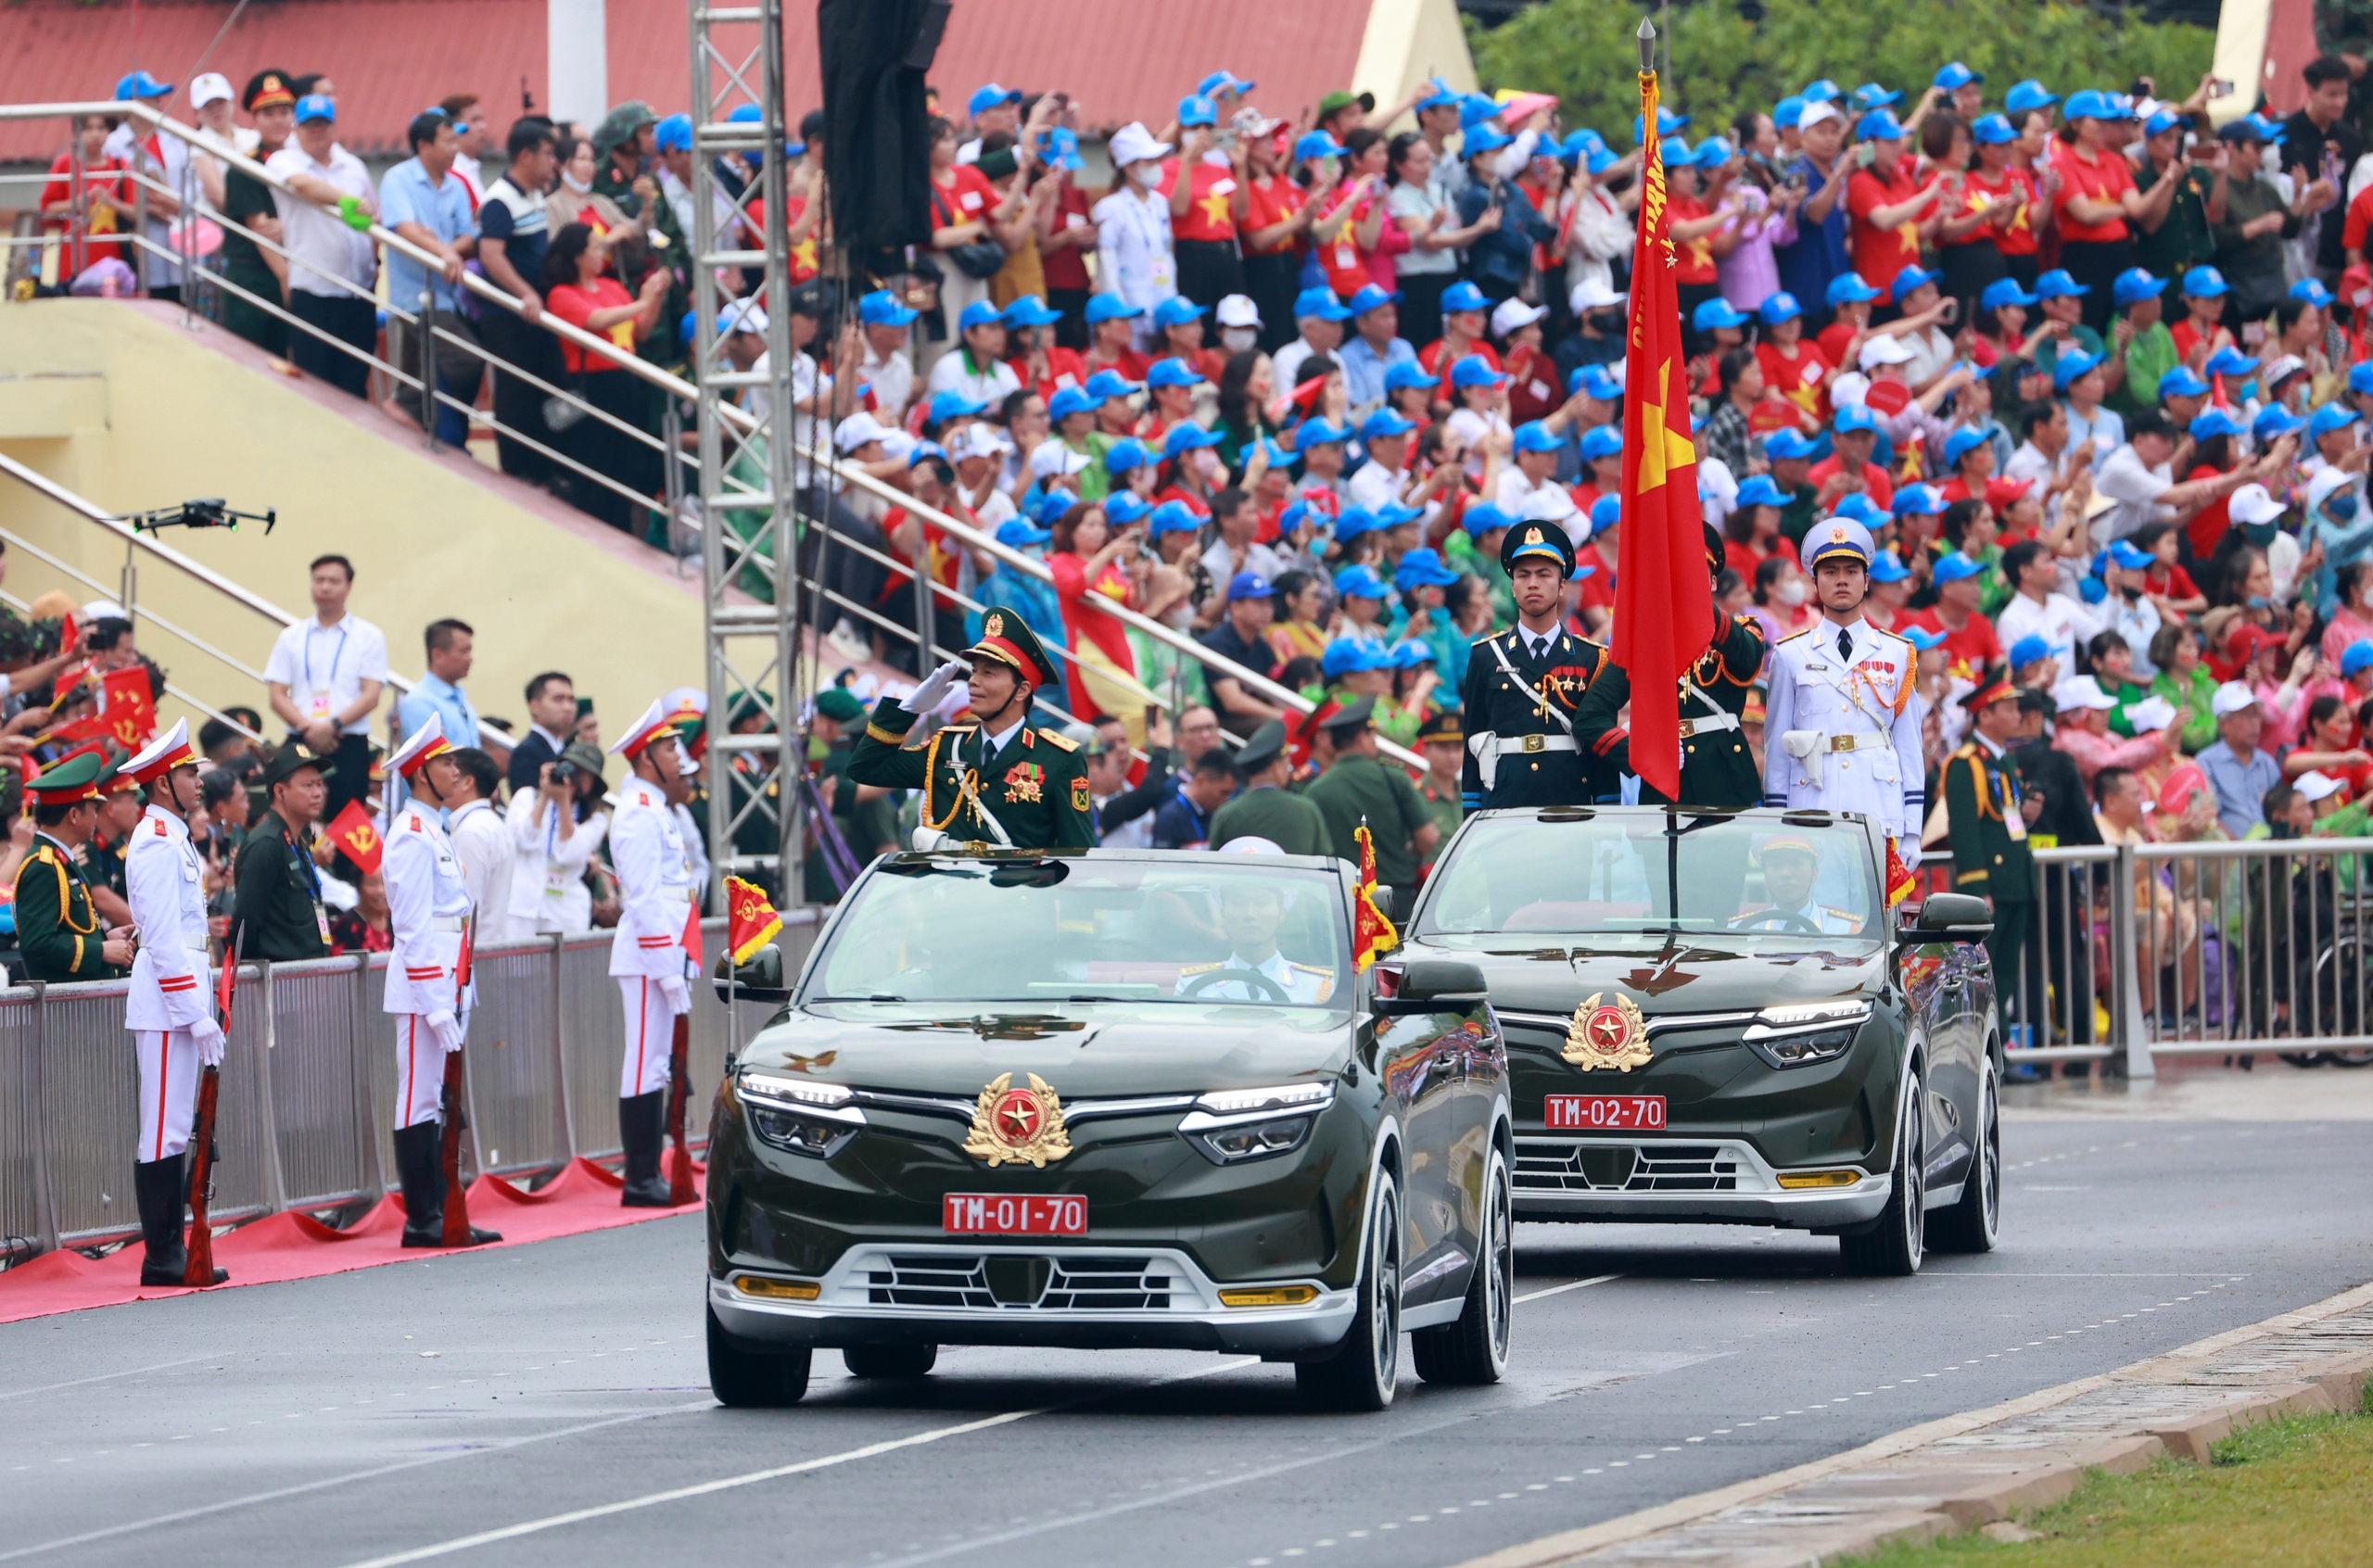 Trung tướng Nguyễn Trọng Bình, Phó tổng tham mưu trưởng Quân đội nhân dân Việt Nam chỉ huy, dẫn đầu các khối đại diện cho lực lượng quân đội và dân quân tự vệ. Sau đó là chiếc VF8 chở 3 chiến sĩ mang quân kỳ, đây là phiên bản mui trần của hãng xe Vinfast, một niềm tự hào của thương hiệu Việt